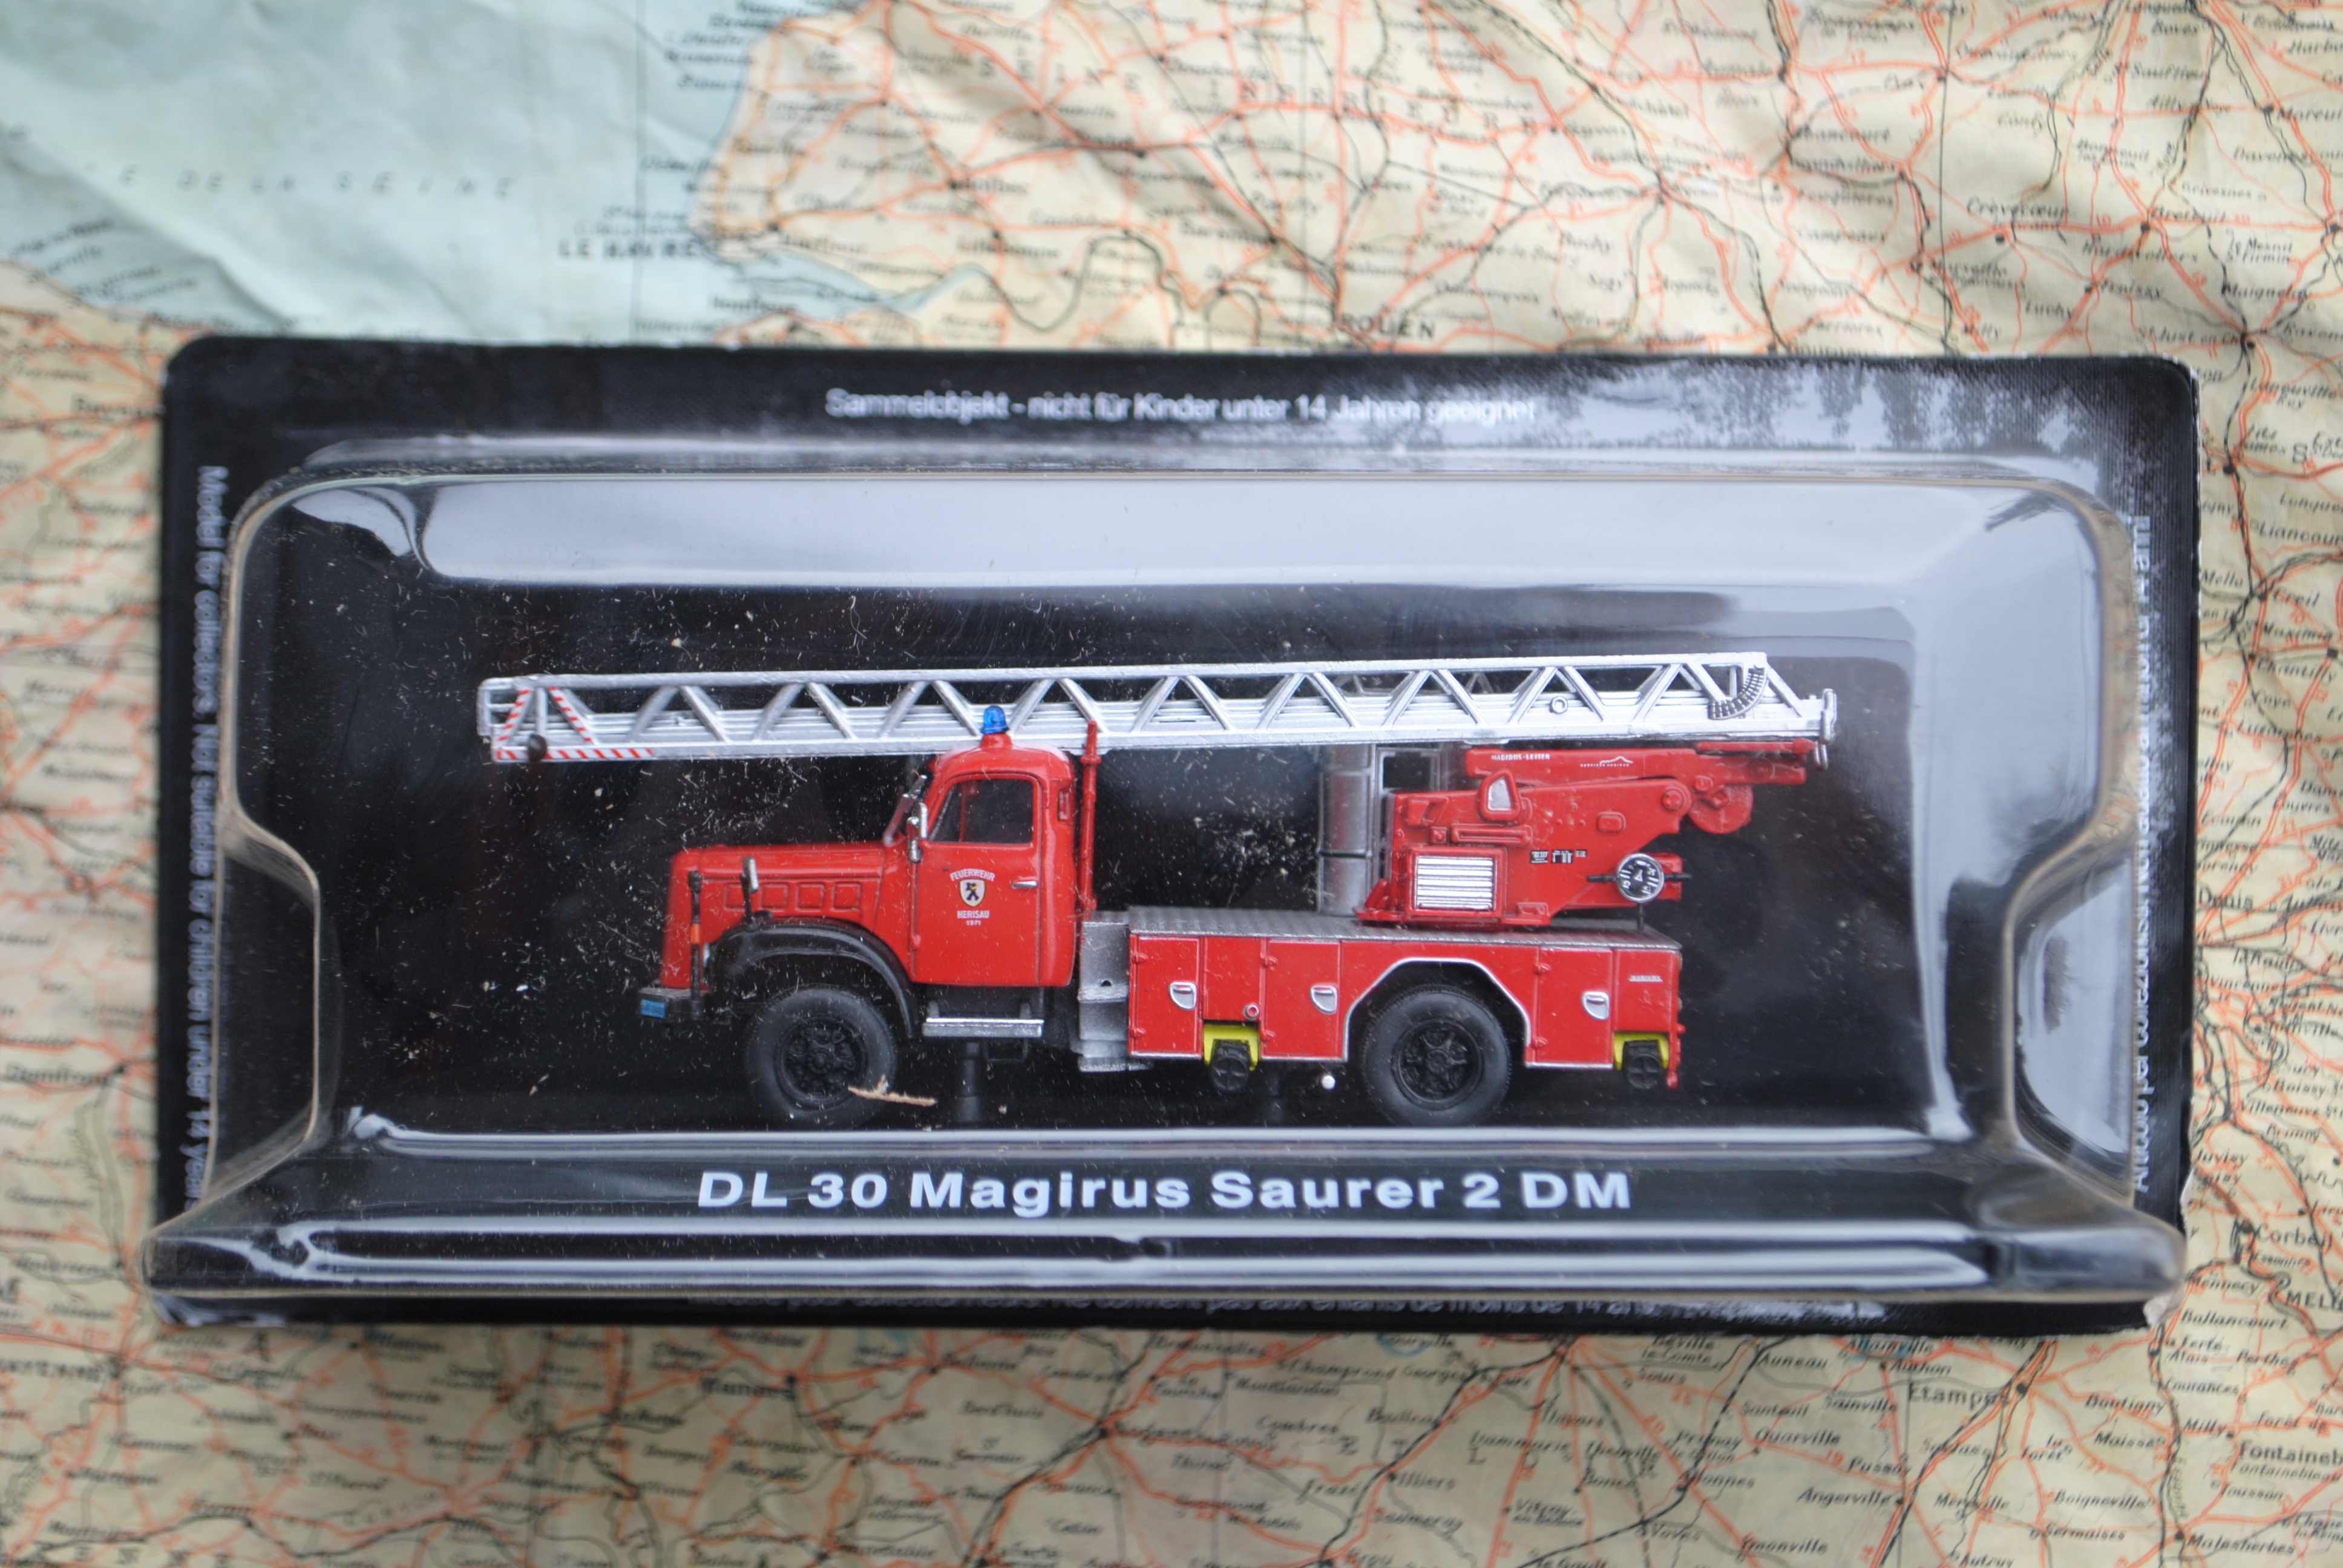 Atlas FIRE01 DL30 Magirus Saurer 2 DM